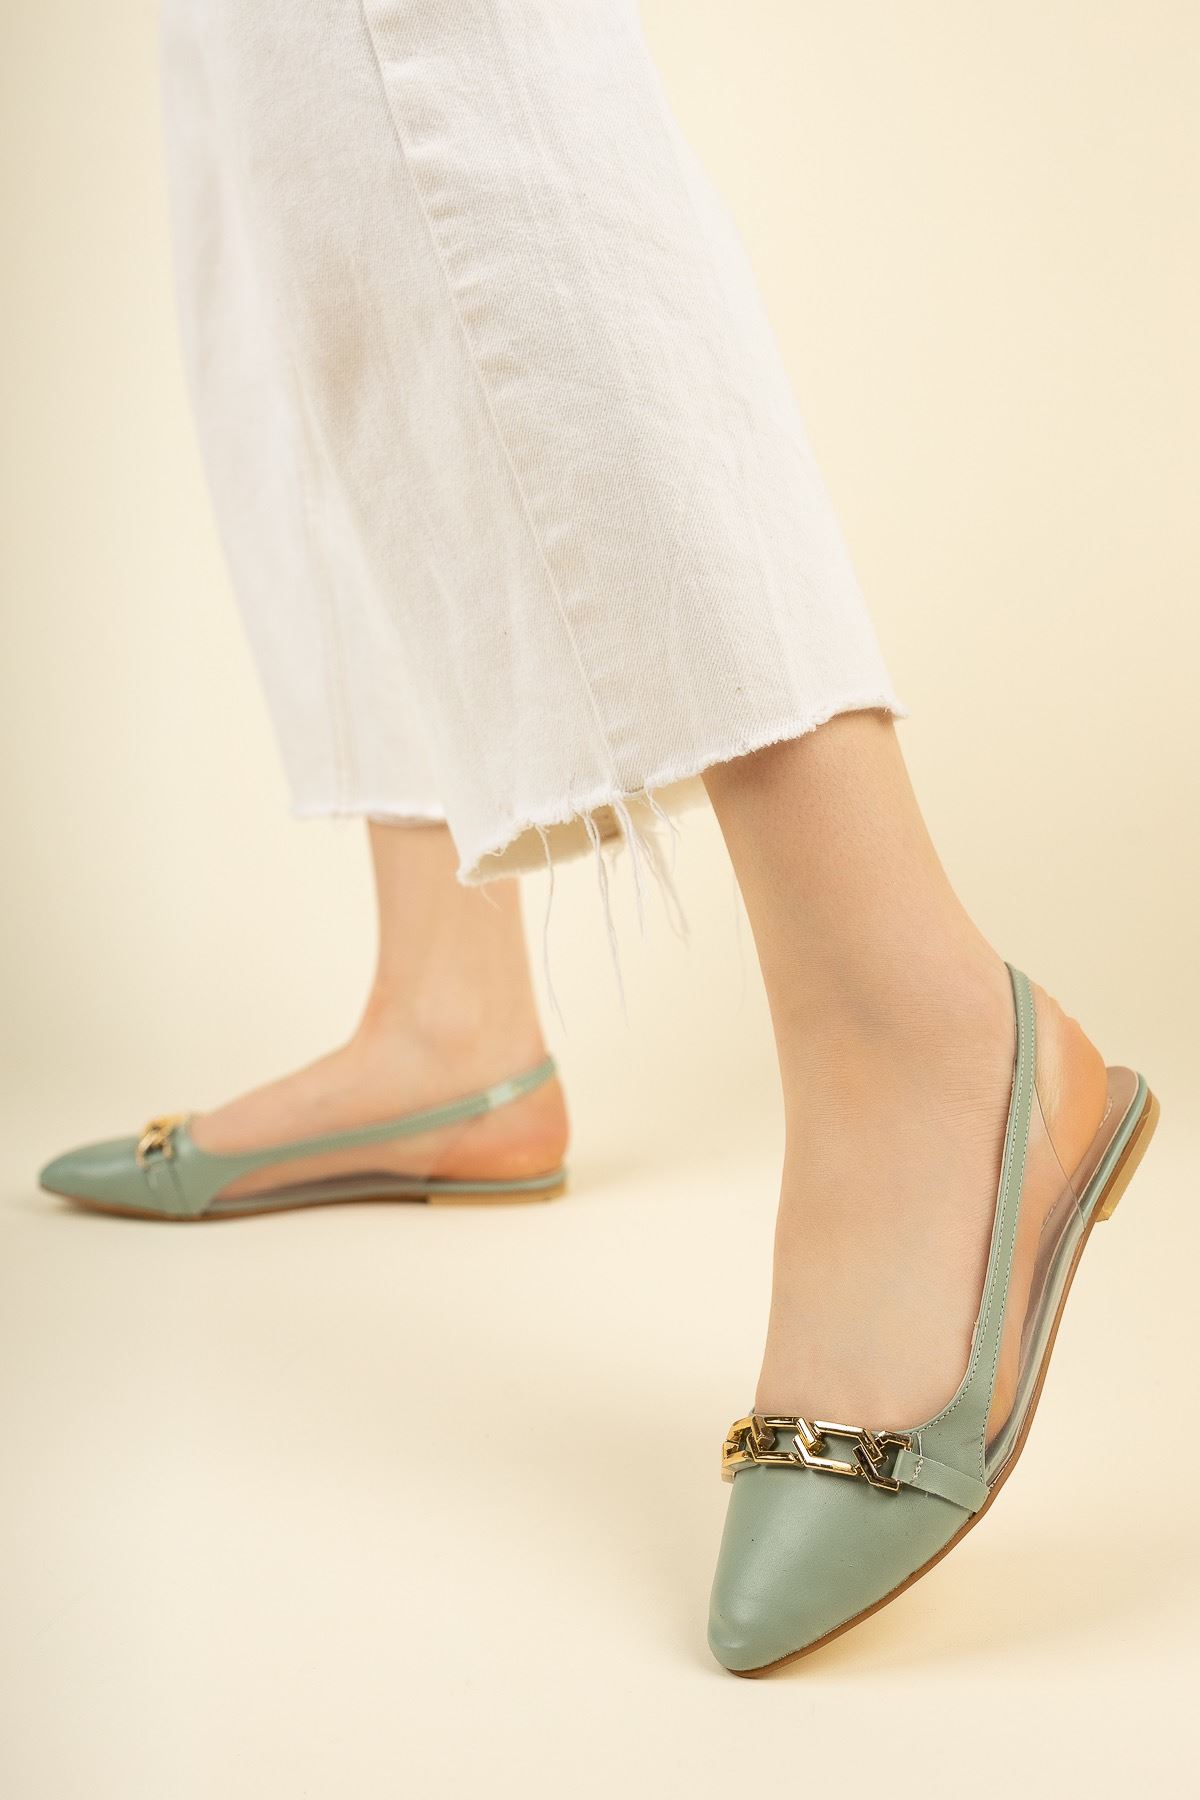 Kadın Dalian Tokalı Babet Ayakkabı - Yeşil Deri